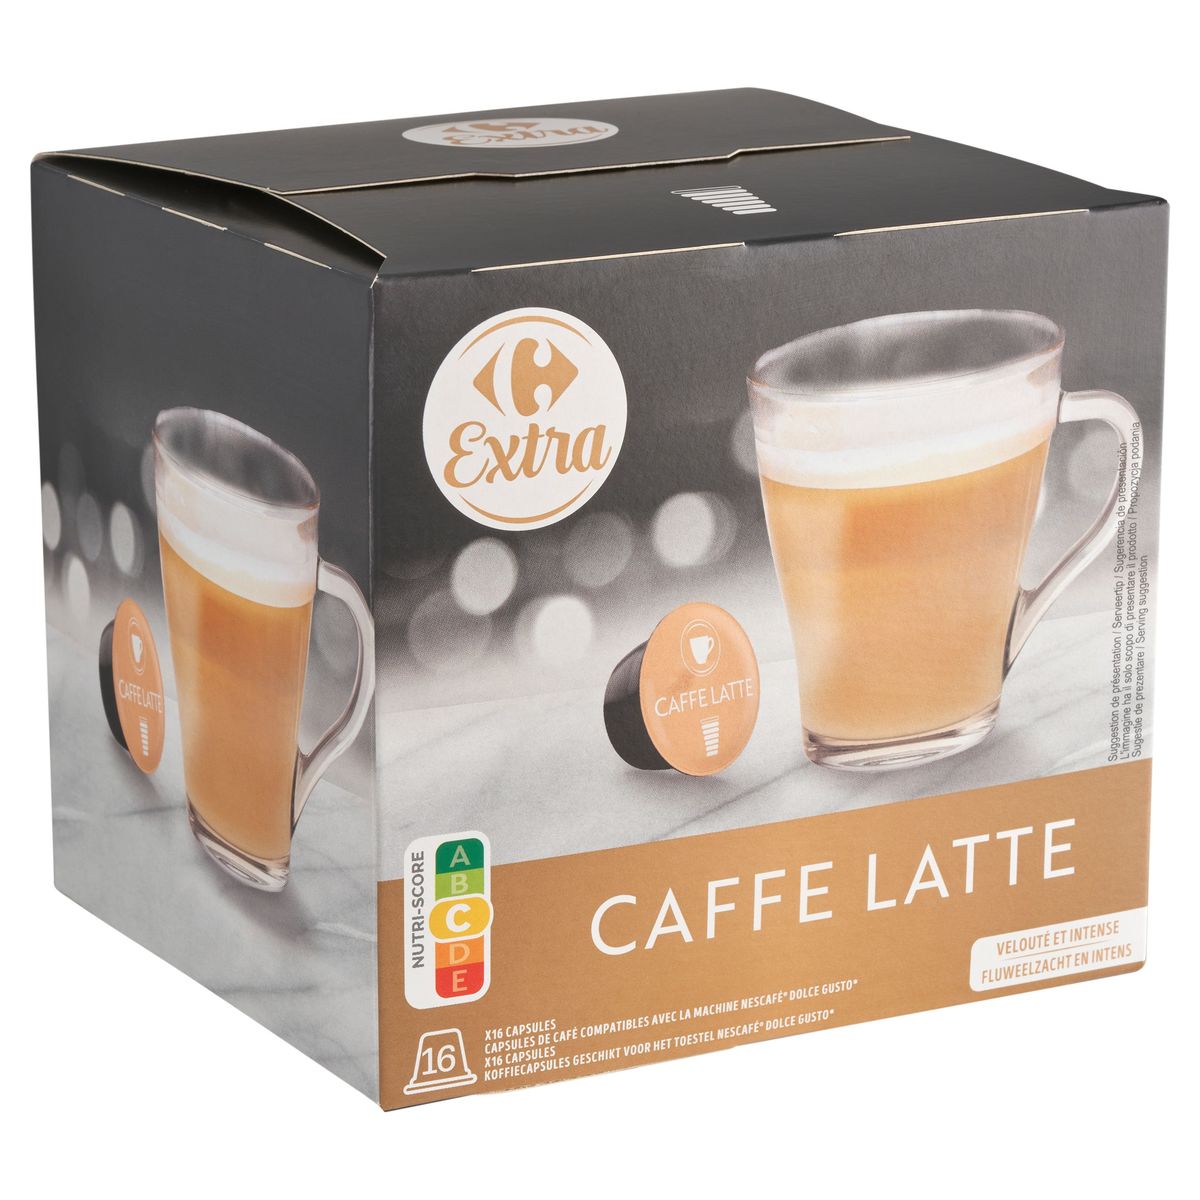 Carrefour Extra Caffe Latte 16 x 9.5 g